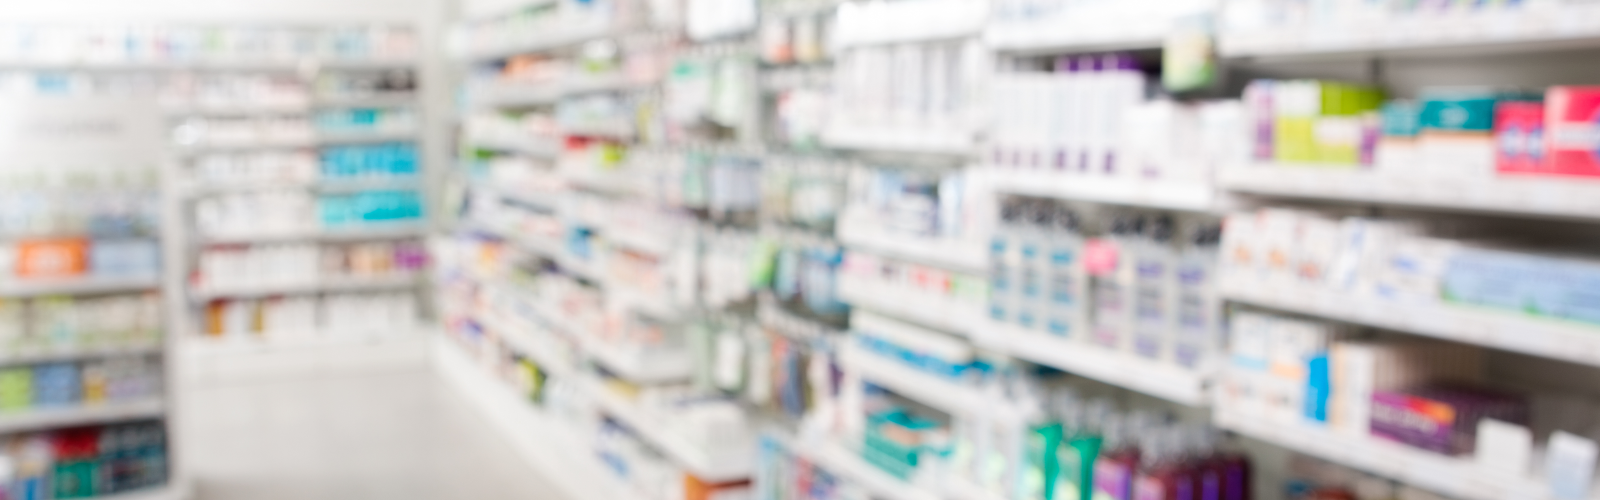 Pharmacy Shelves Header